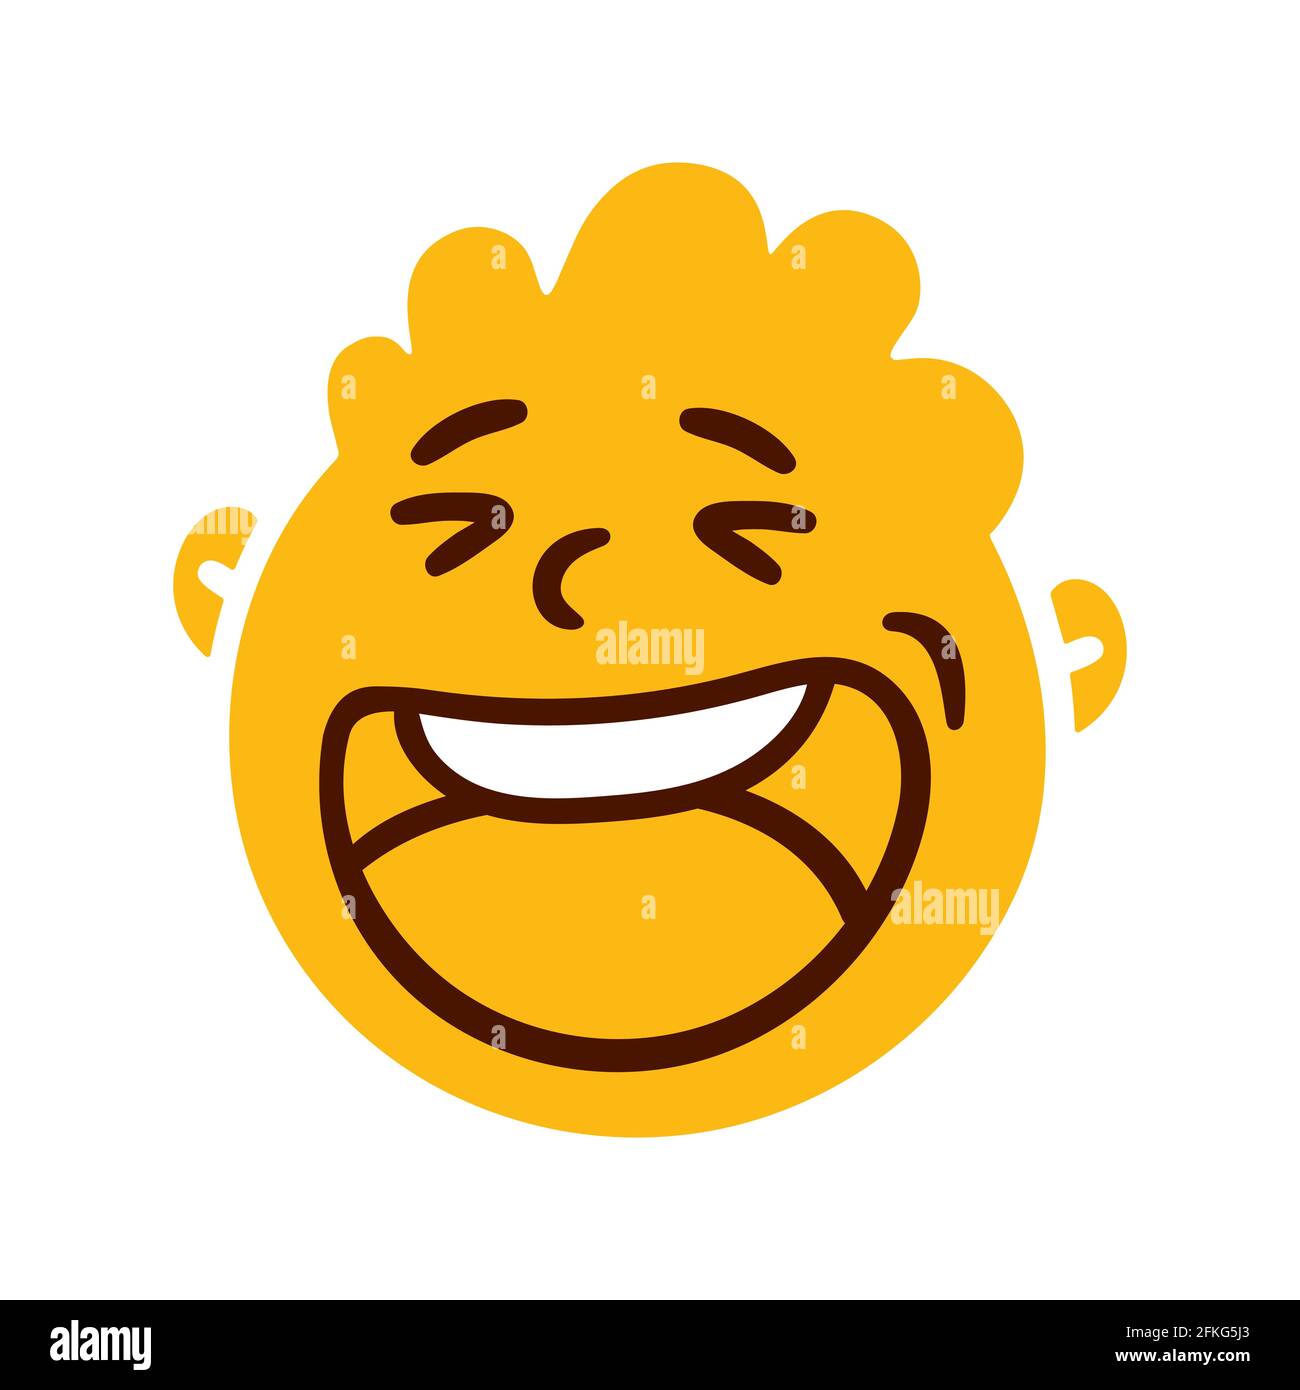 Rundes, abstraktes Gesicht mit fröhlichen Emotionen. Fröhlich lächelnder Emoji-Avatar. Porträt eines jubelenden Mannes. Cartoon-Stil. Vektor-Illustration mit flachem Design. Stock Vektor